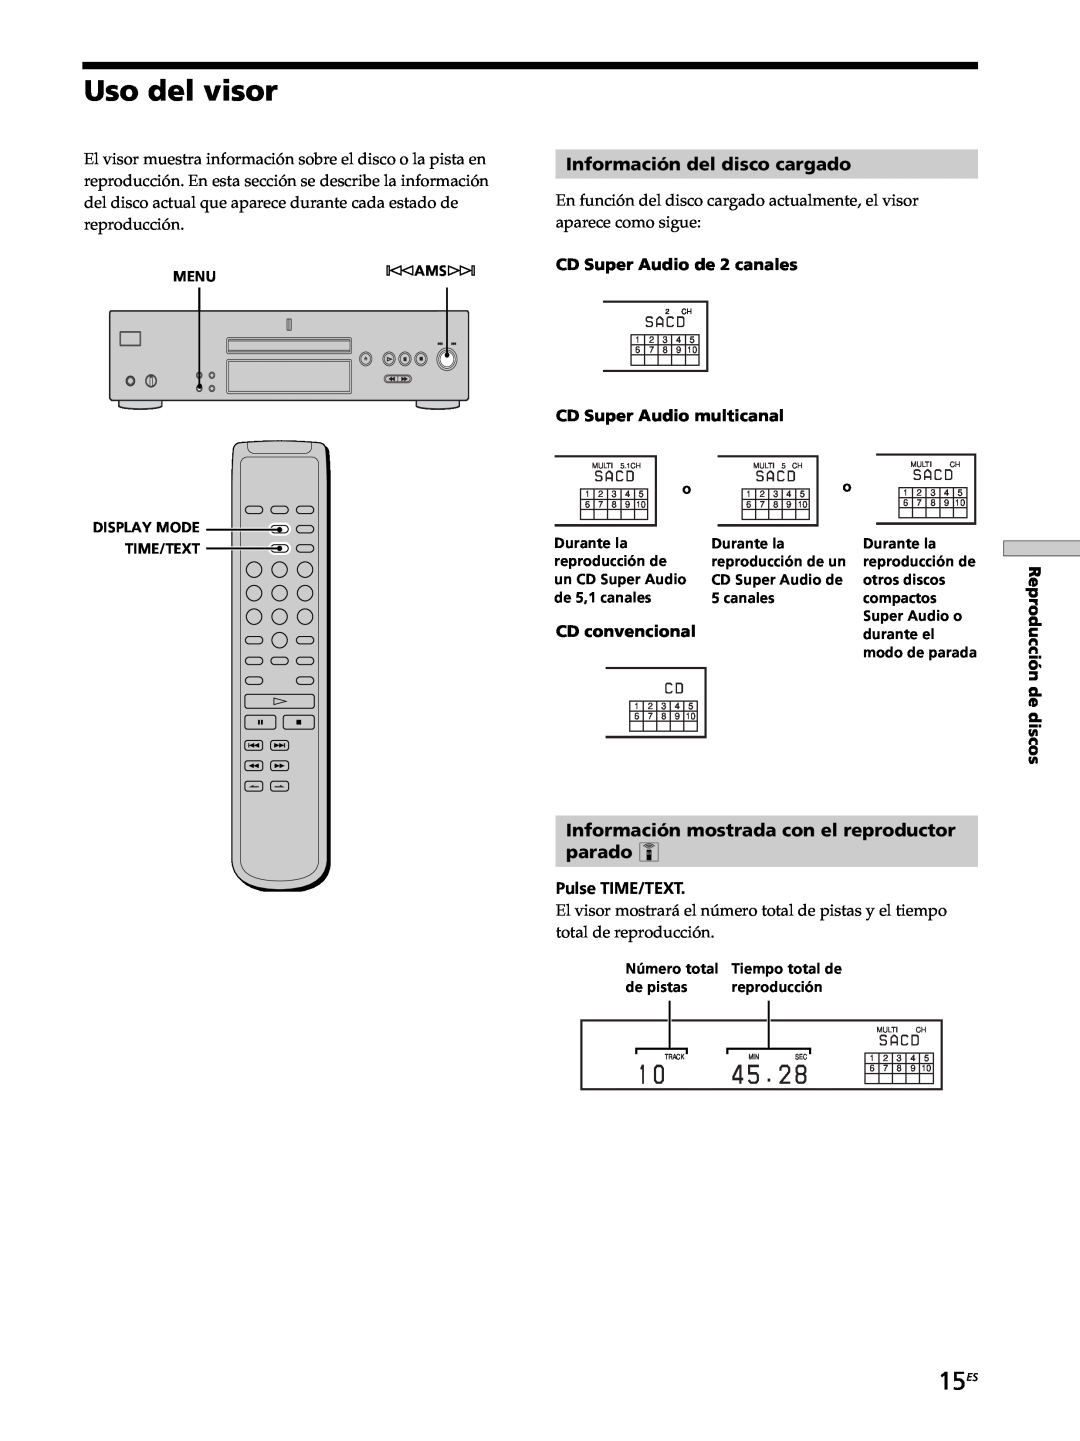 Sony SCD-XB770 Uso del visor, 15ES, Información del disco cargado, Información mostrada con el reproductor parado Z 